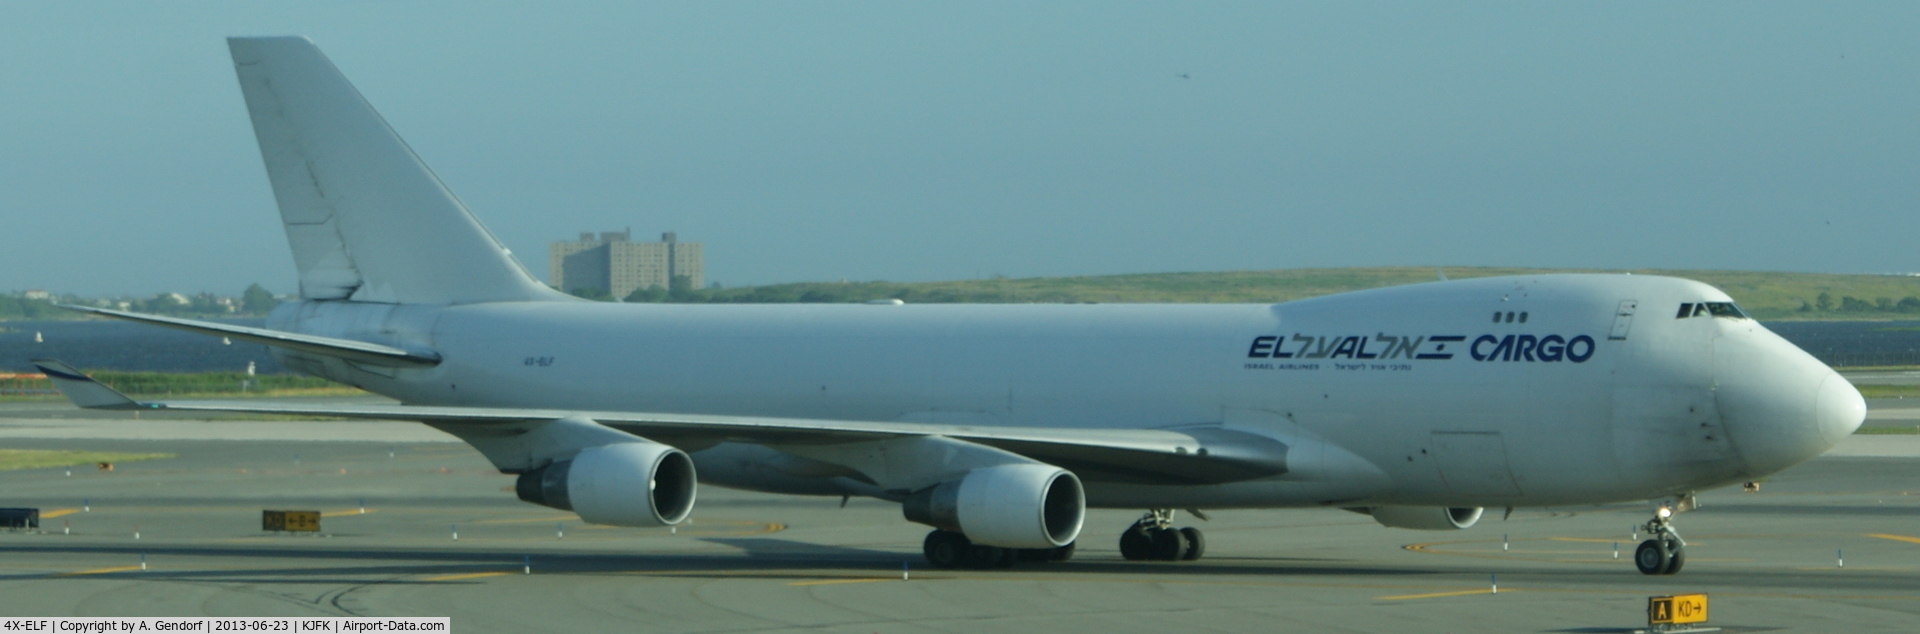 4X-ELF, 1994 Boeing 747-412F C/N 26563, EL AL Cargo, seen here after landing at New York - JFK(KJFK)